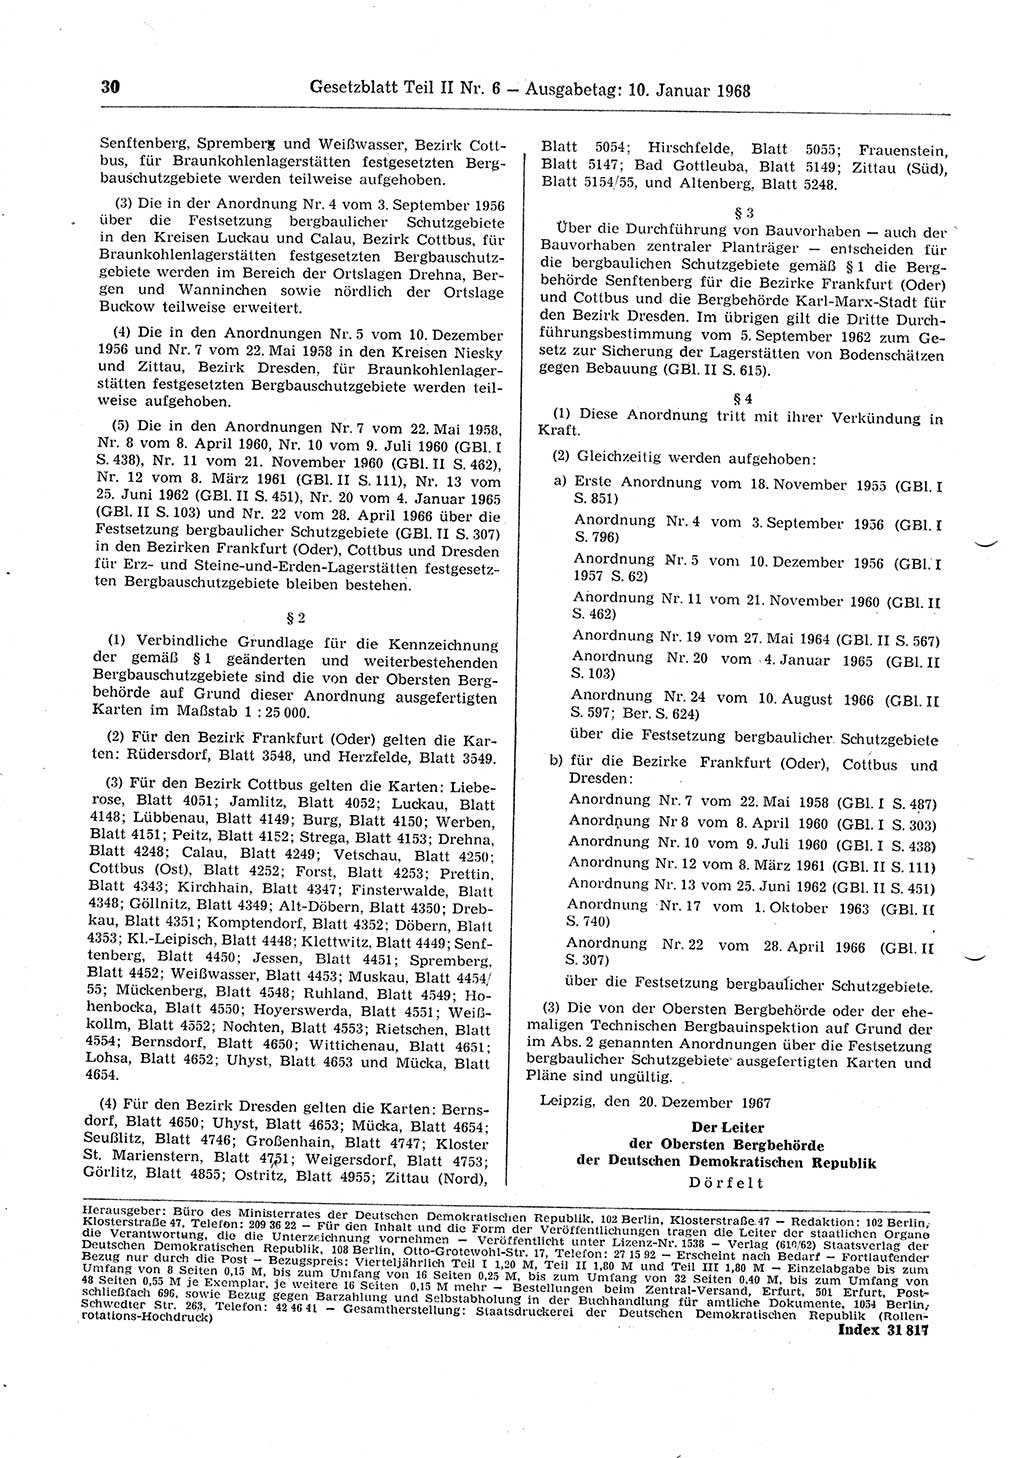 Gesetzblatt (GBl.) der Deutschen Demokratischen Republik (DDR) Teil ⅠⅠ 1968, Seite 30 (GBl. DDR ⅠⅠ 1968, S. 30)